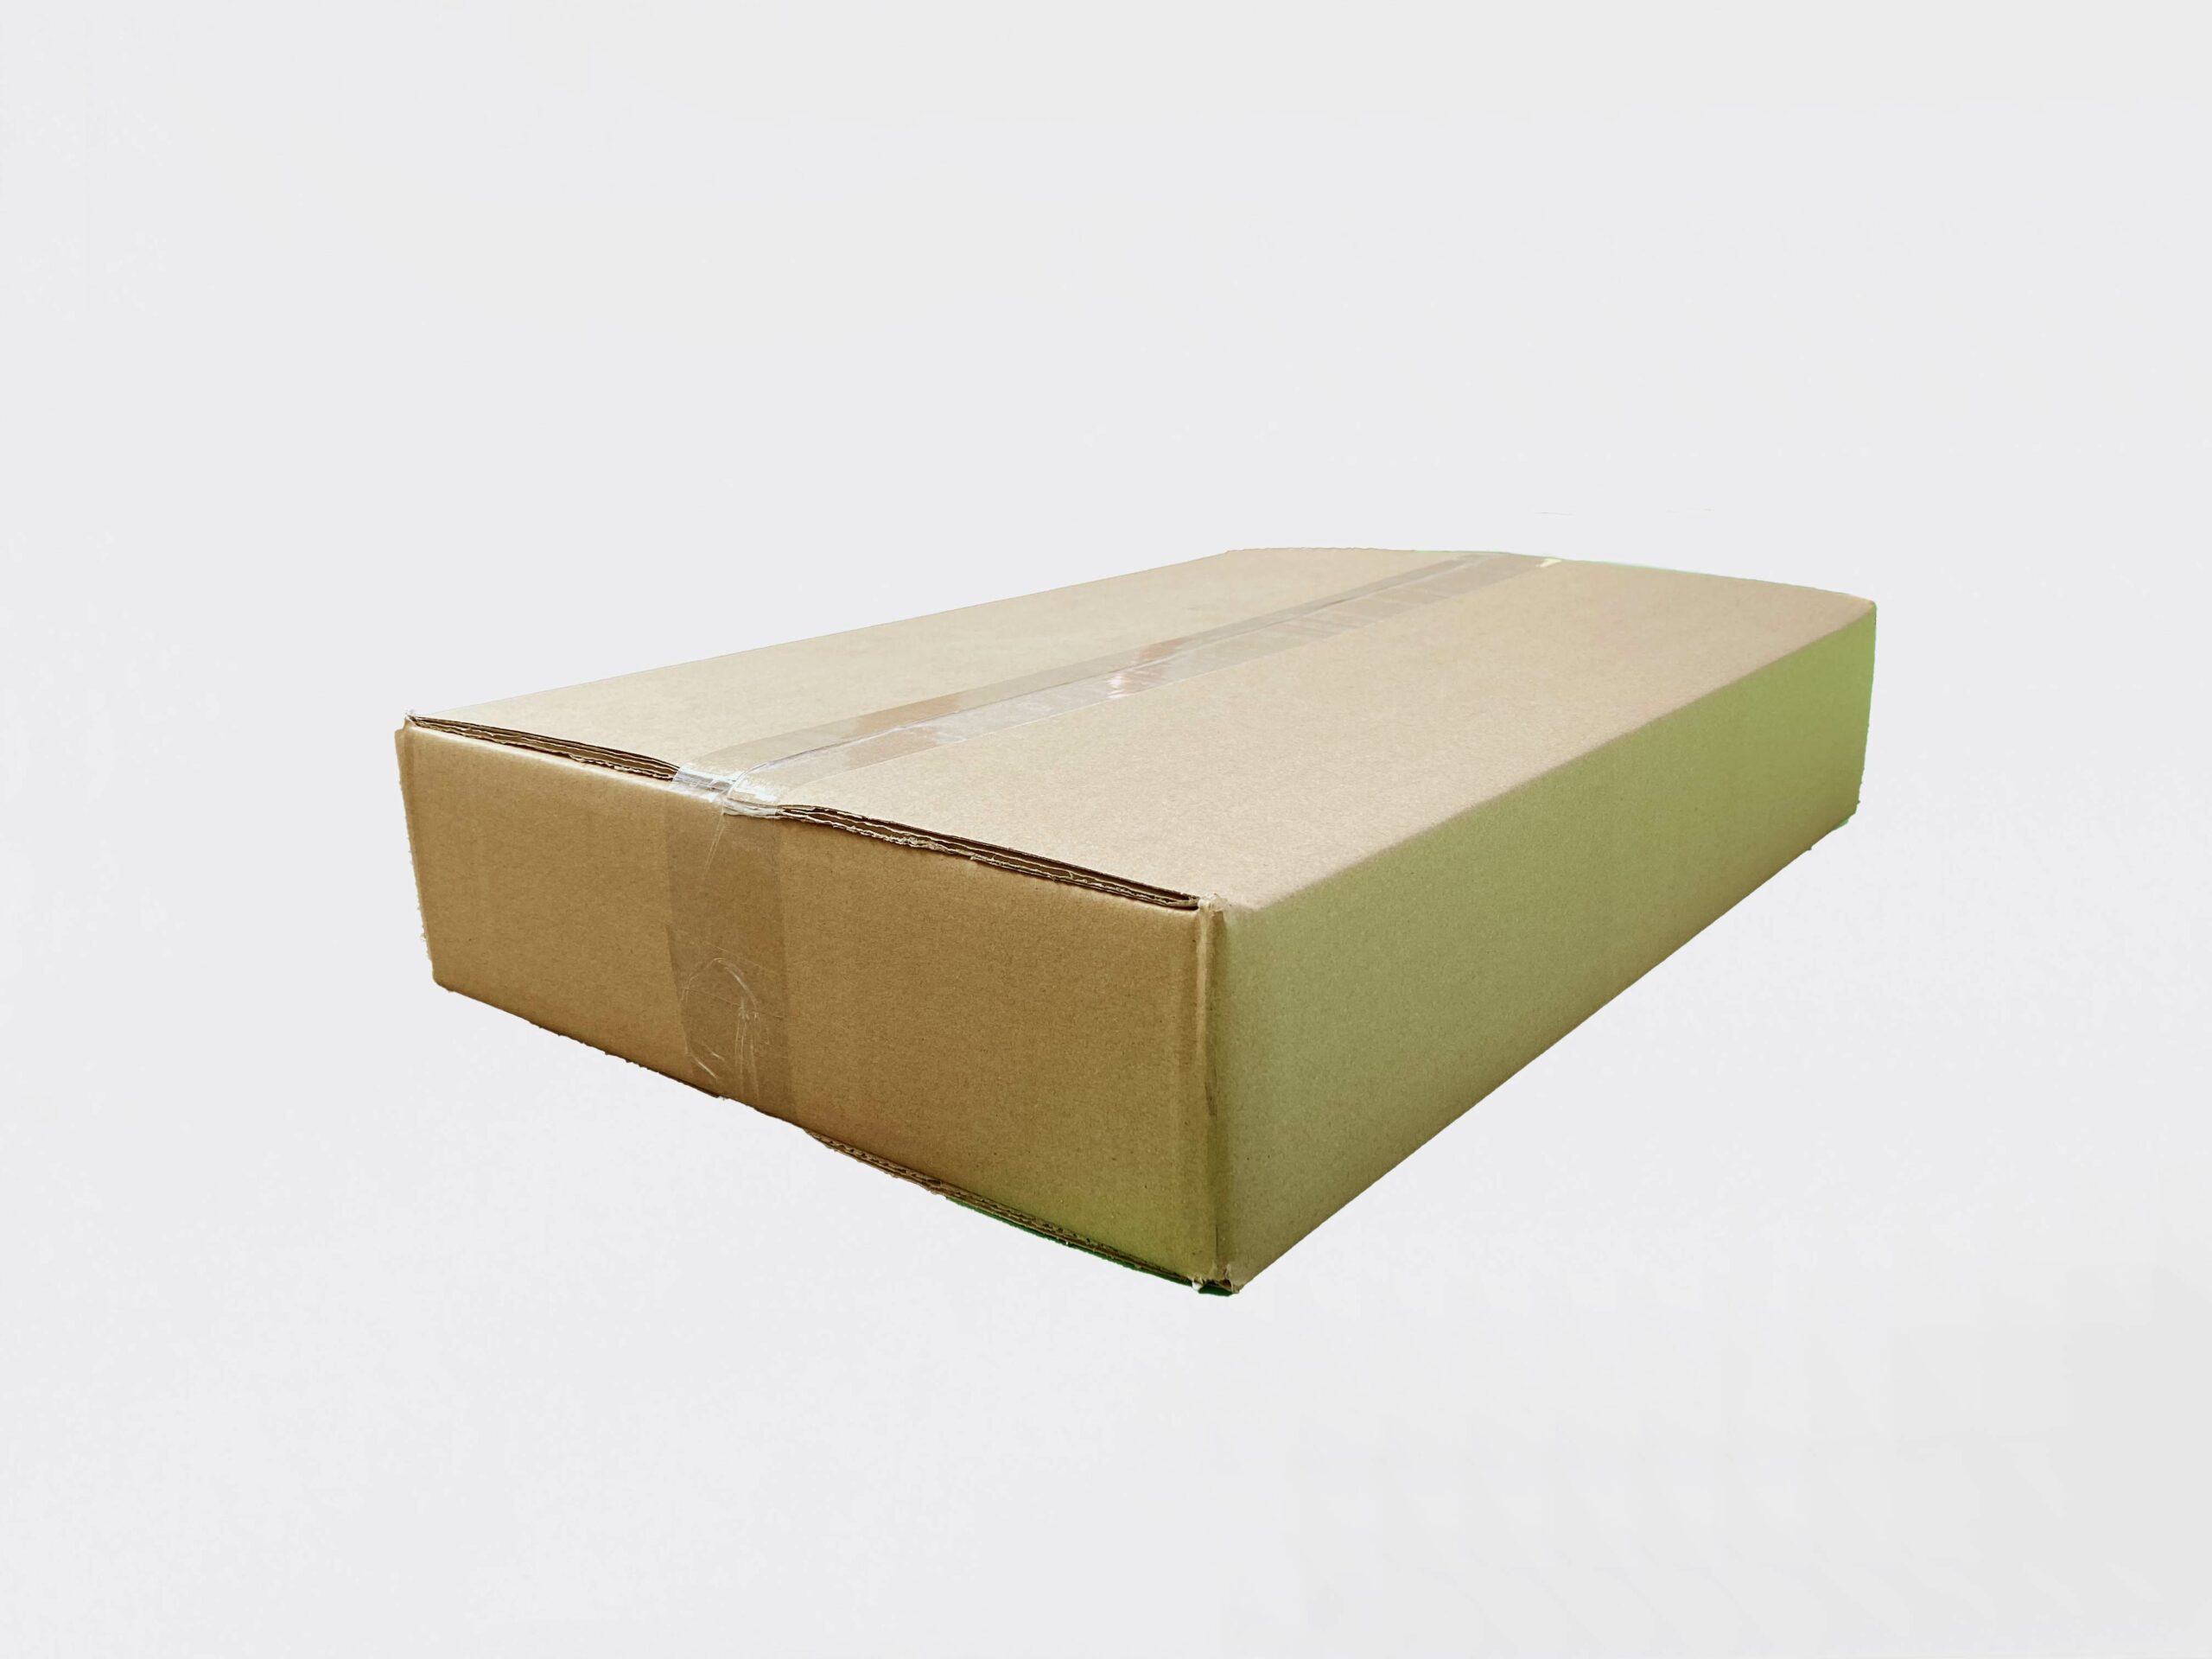 Caisse carton grand format, container carton - Vente de grand carton